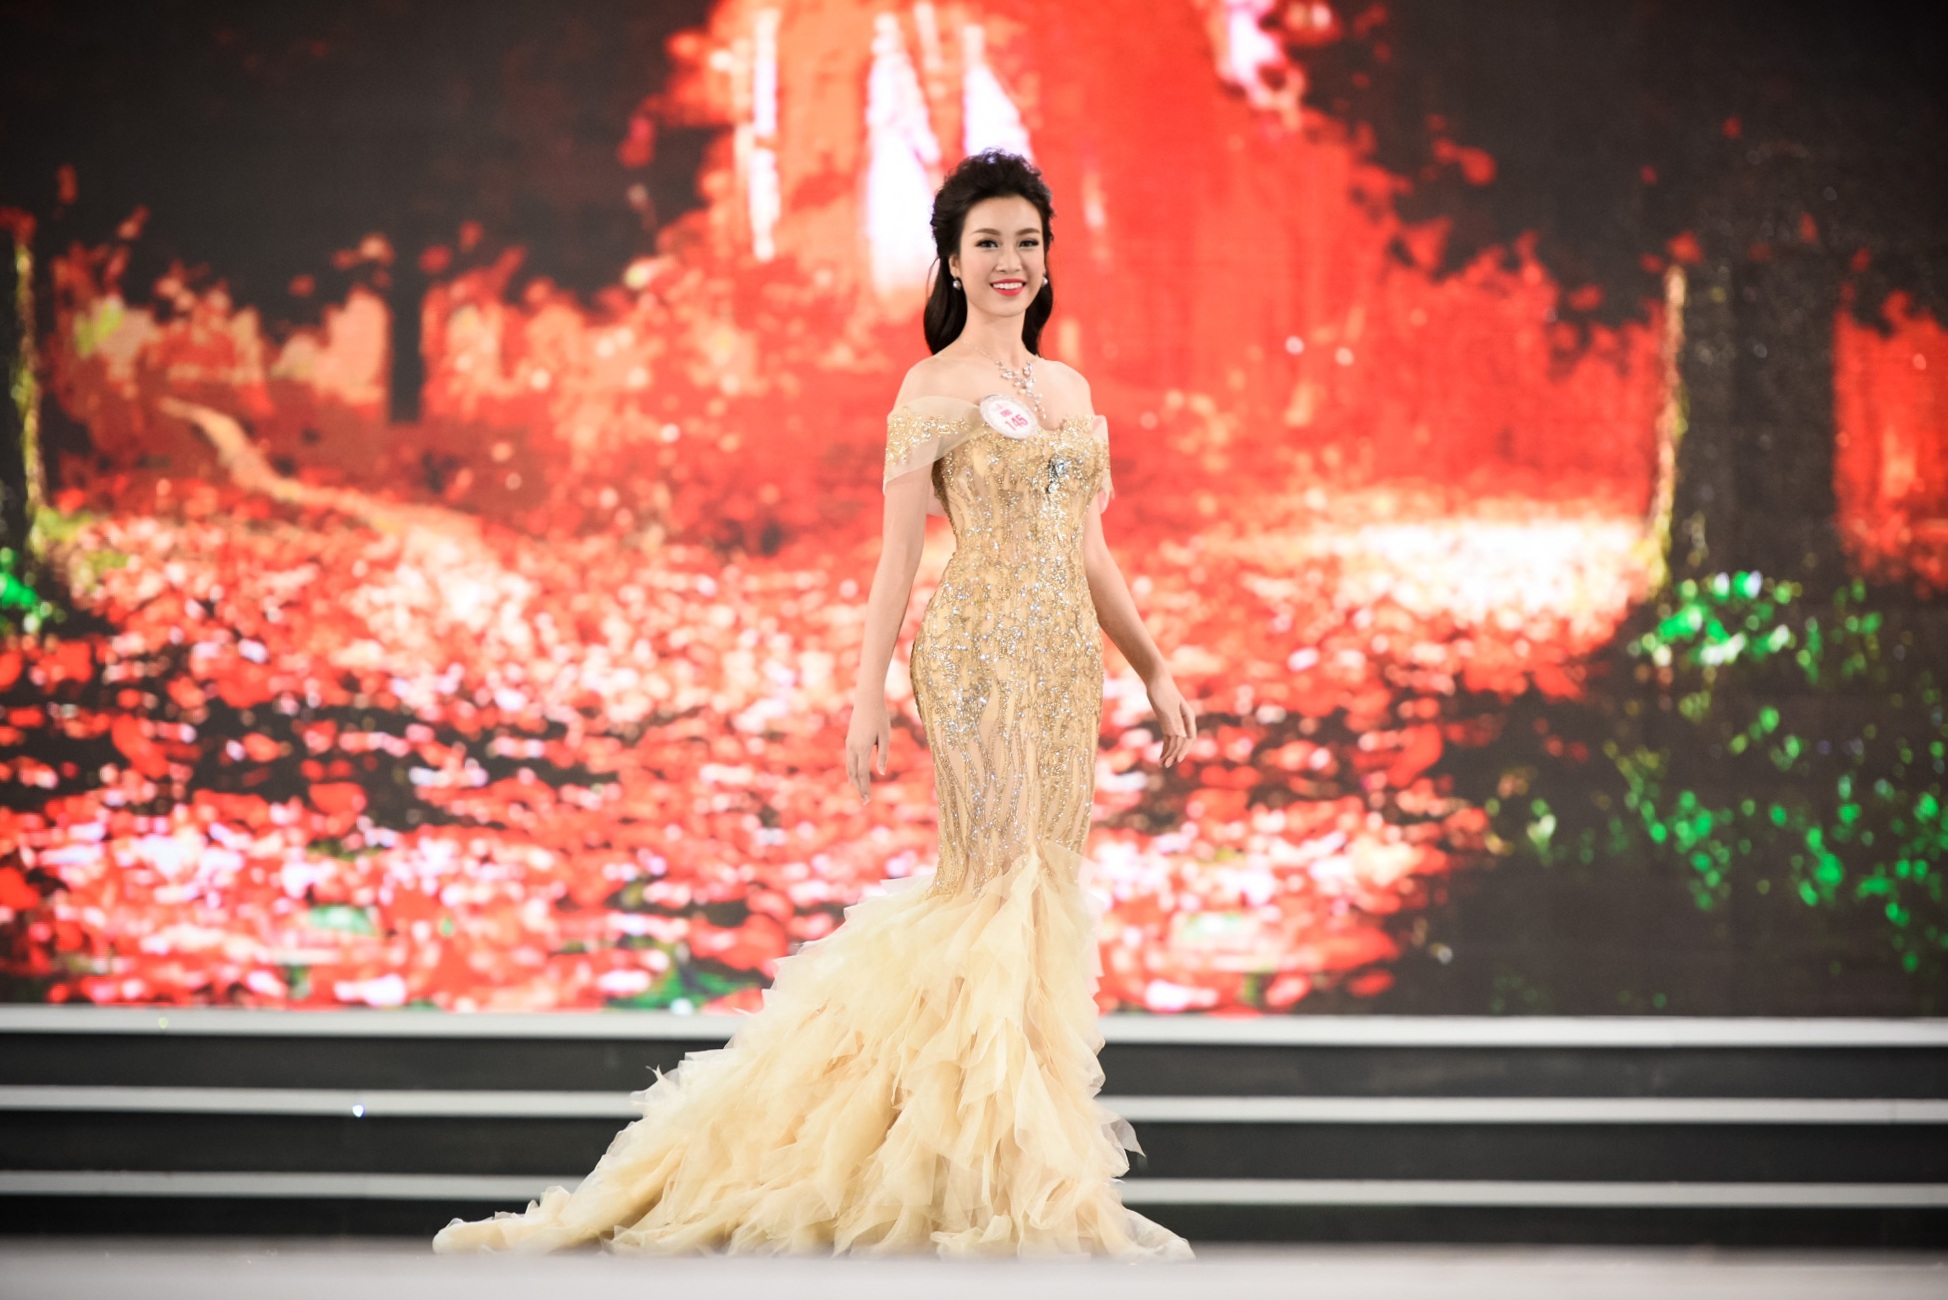 Nhan sắc rạng rỡ của Hoa hậu Đỗ Mỹ Linh ở phần thi trang phục dạ hội đêm Chung kết tối qua (28/8).